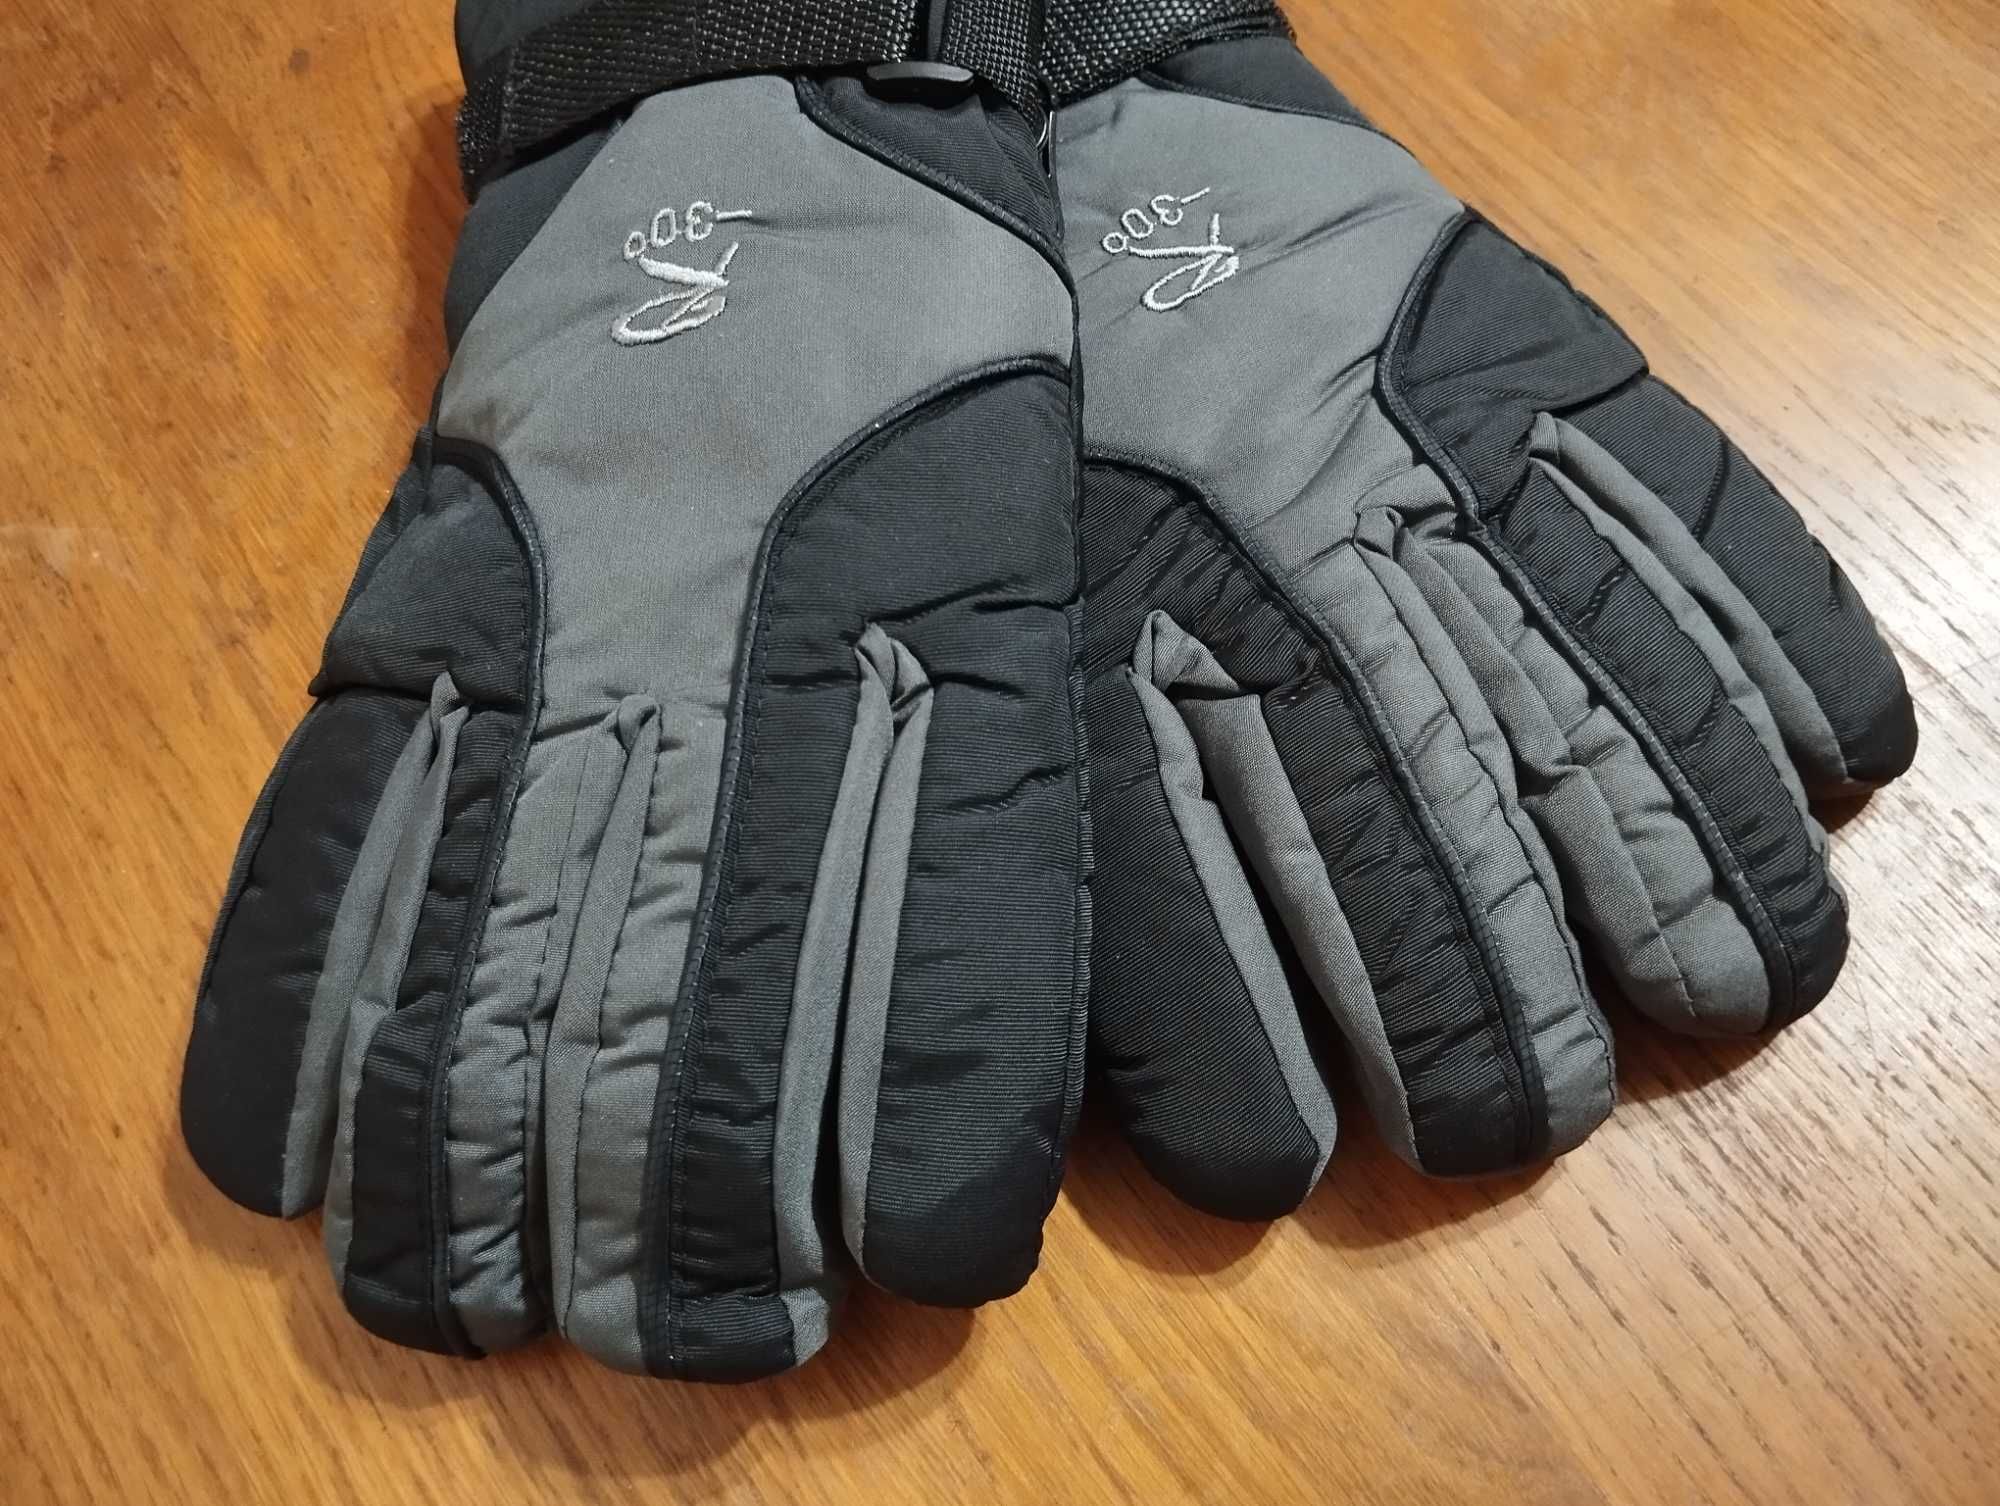 Зимние перчатки для мороза мужские. Новые.